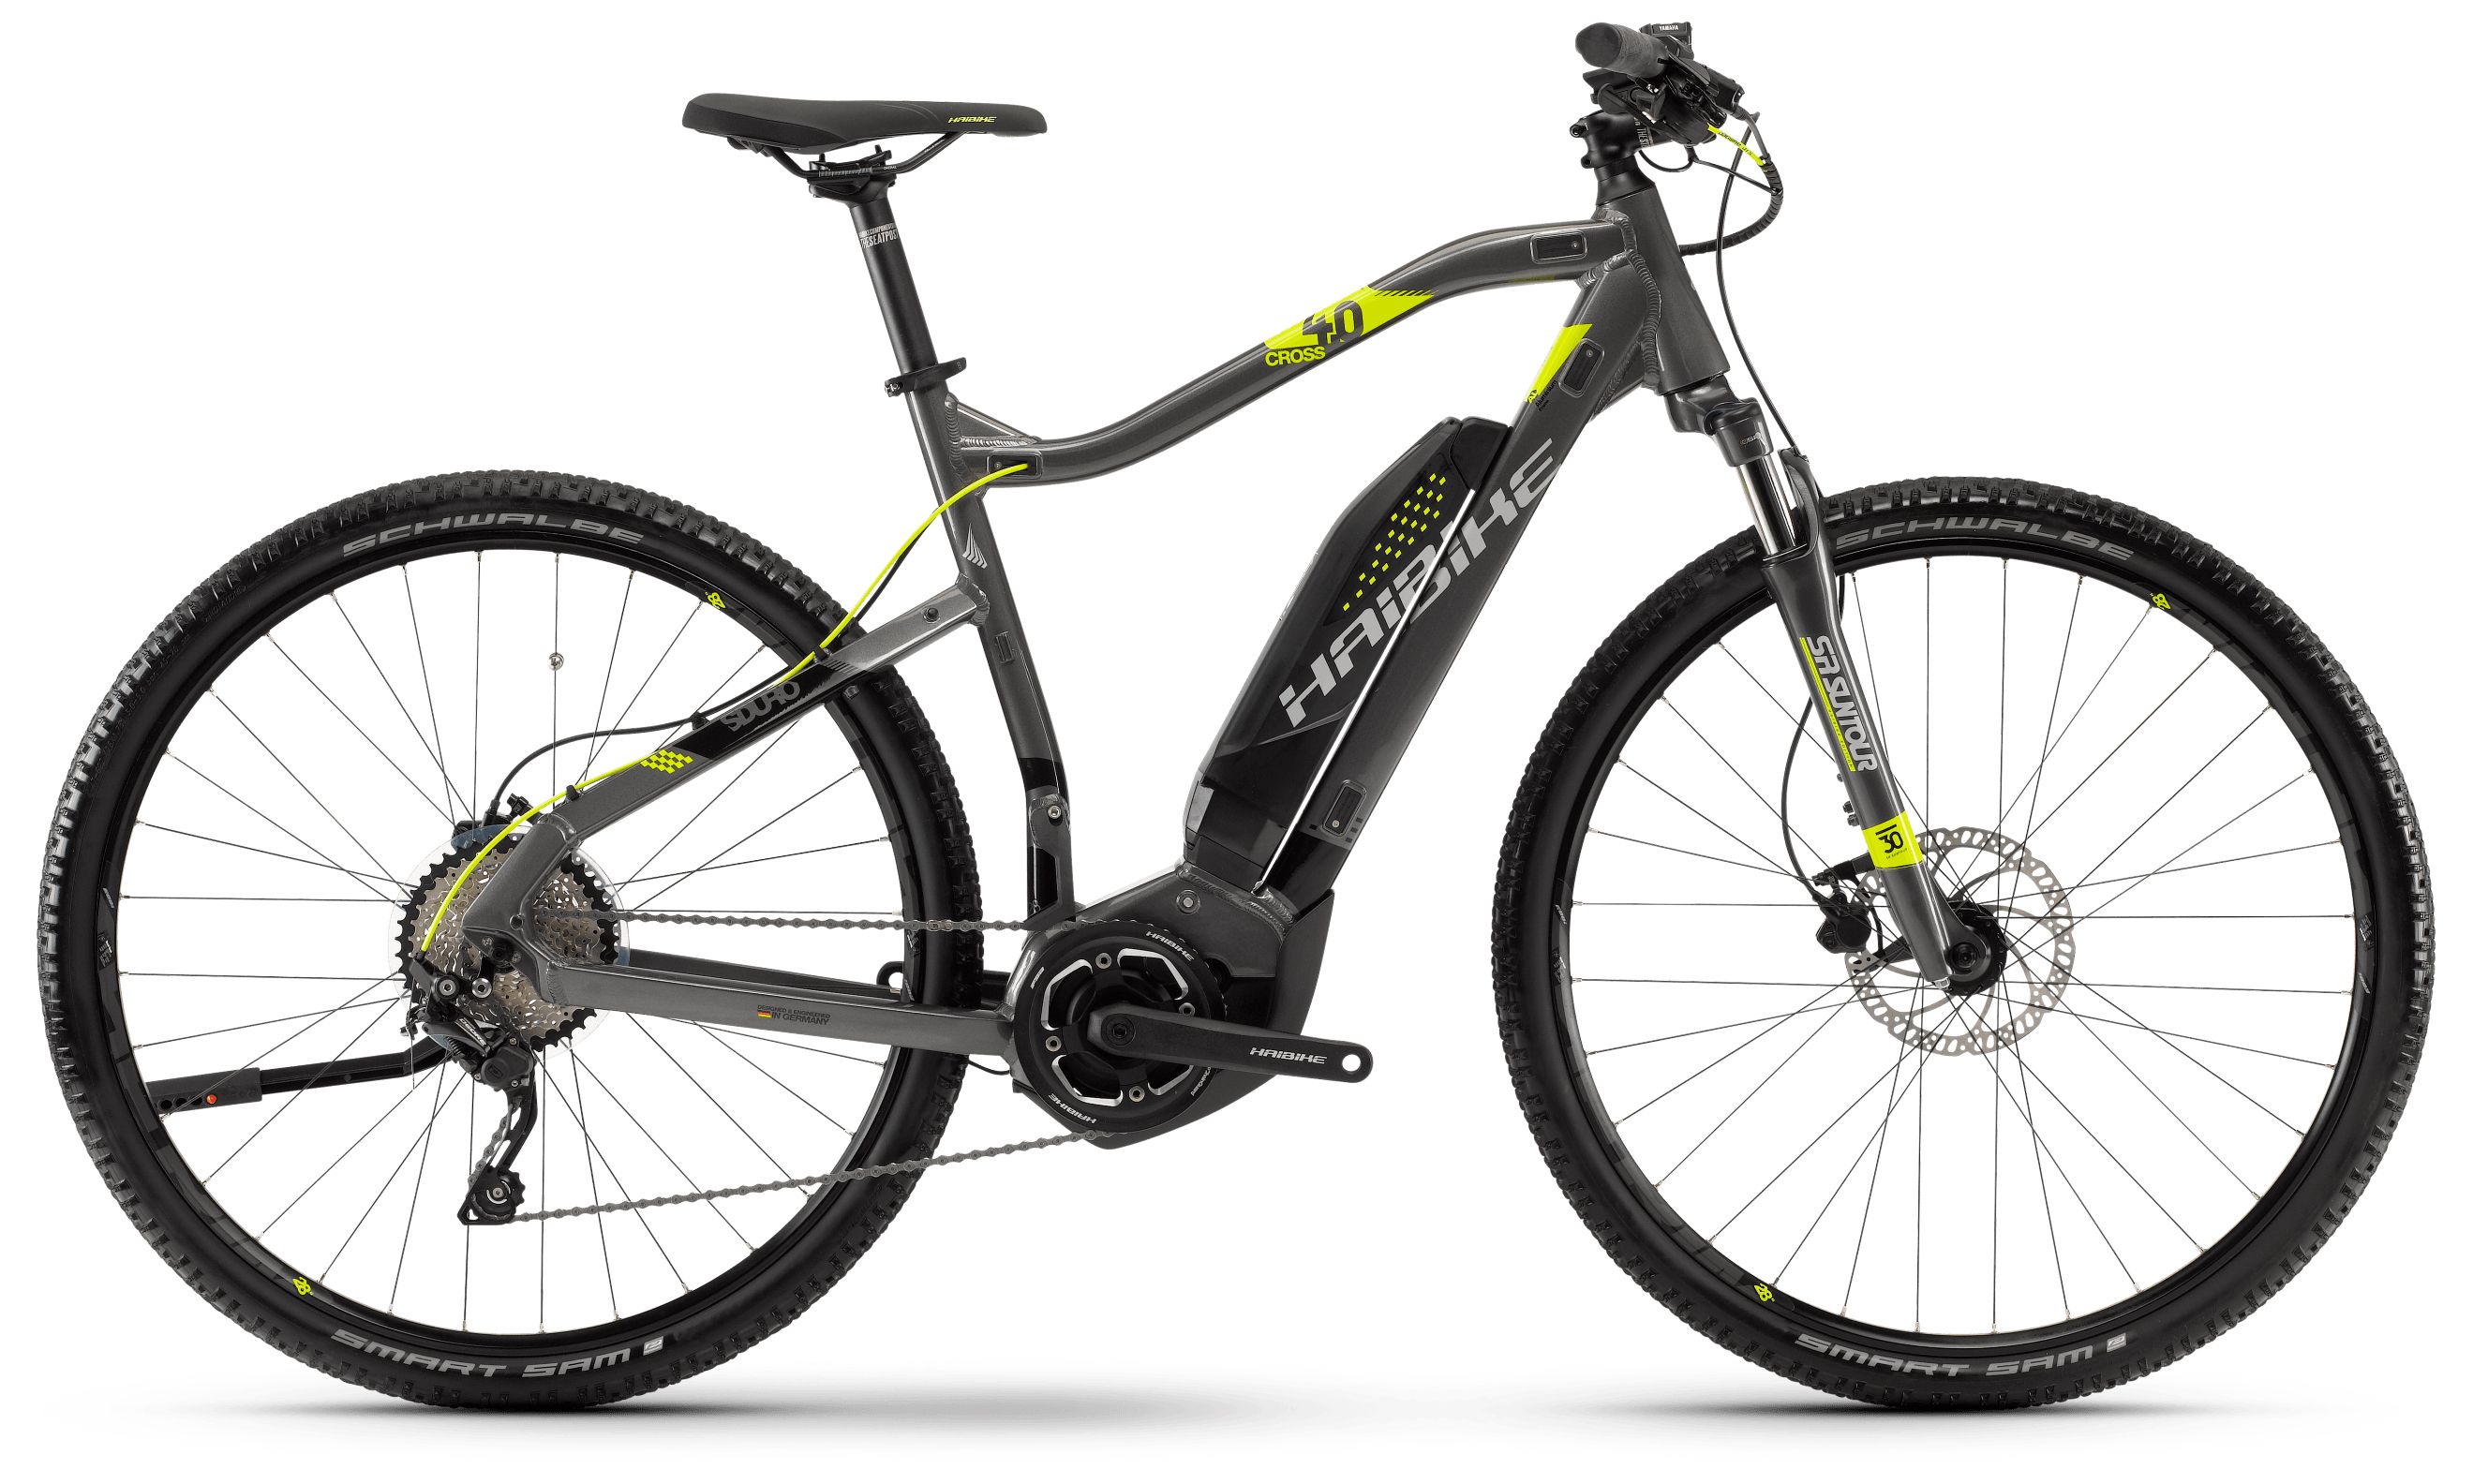  Отзывы о Электровелосипеде Haibike Sduro Cross 4.0 men 400Wh 10s Deore 2018